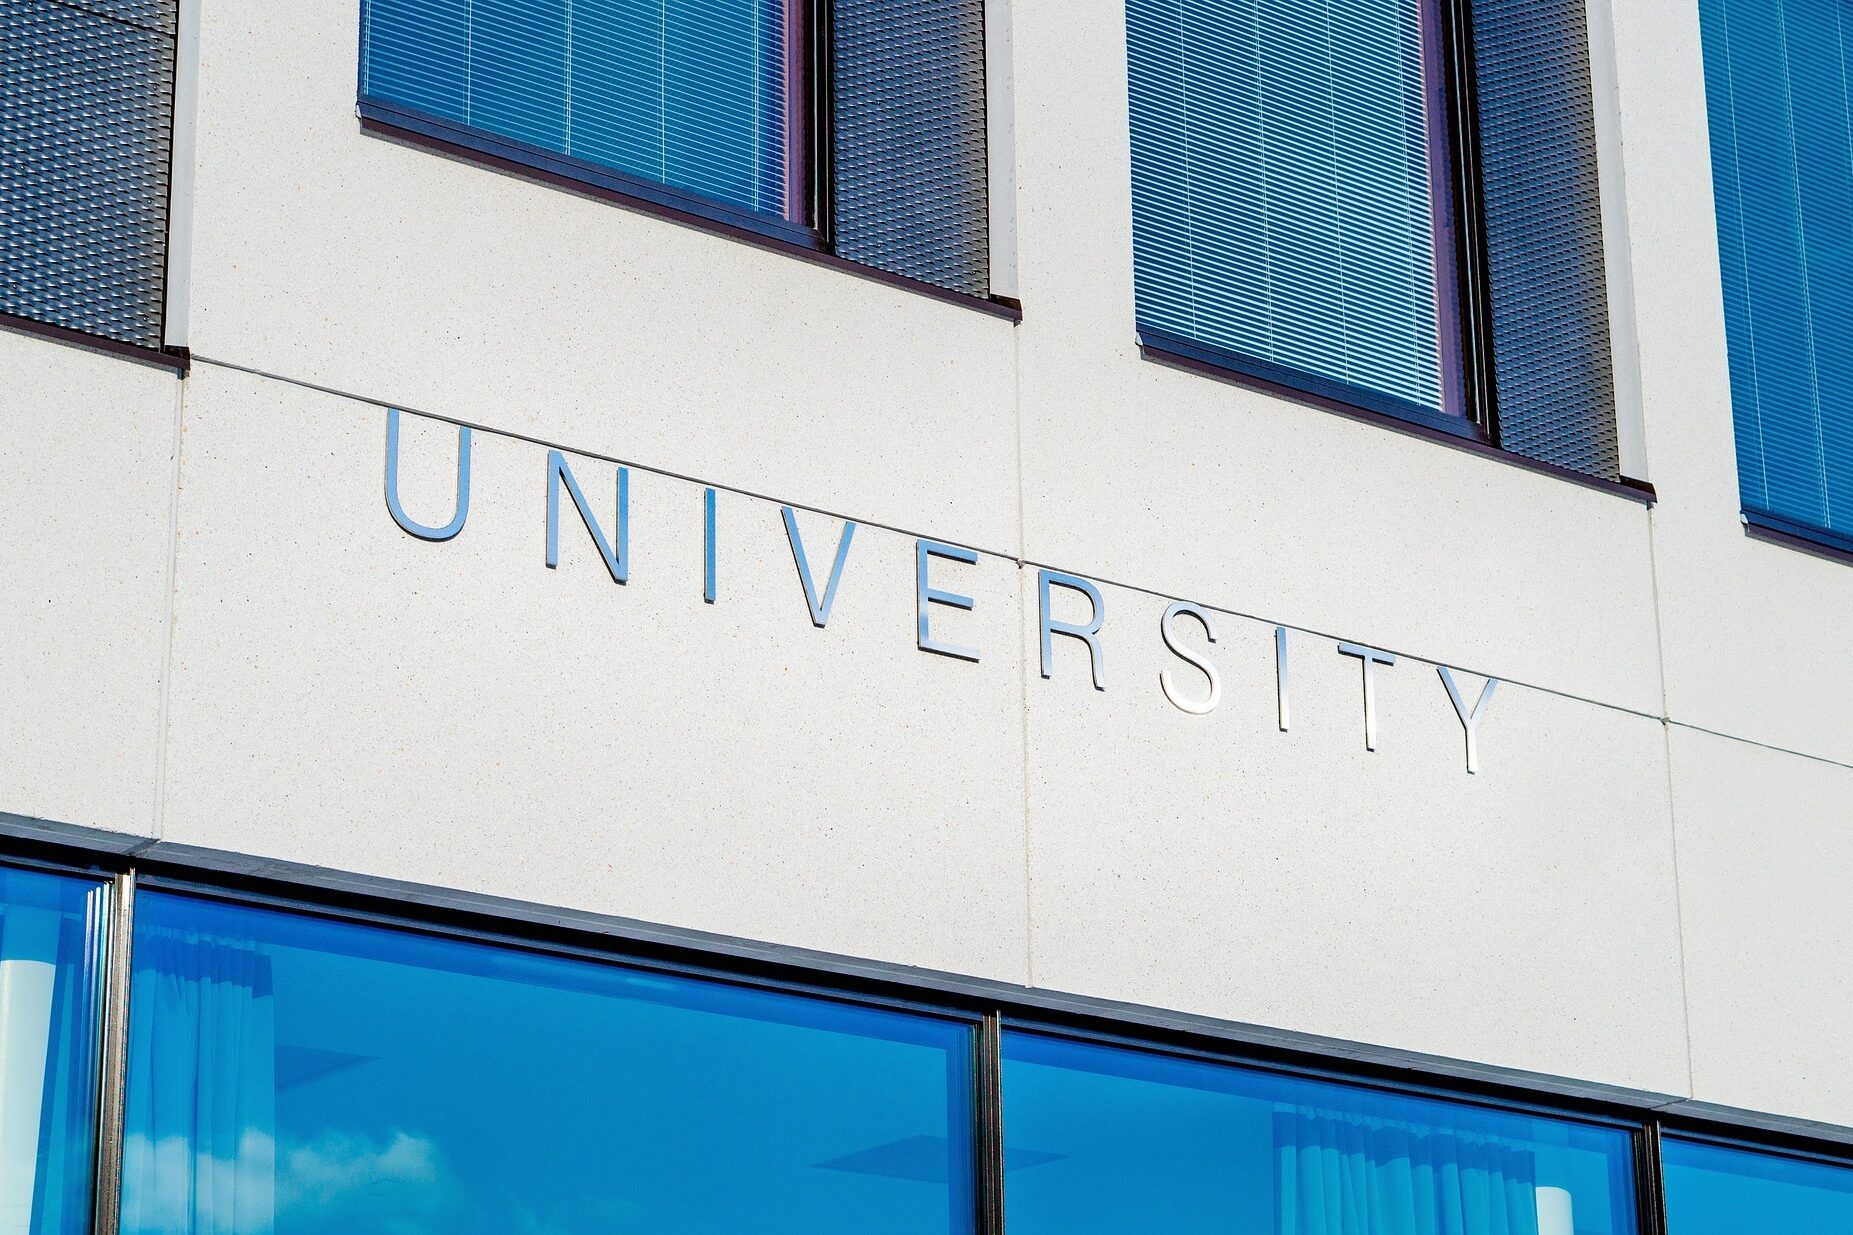 Abbildung der Aufschrift "University" an einem Universitätsgebäude